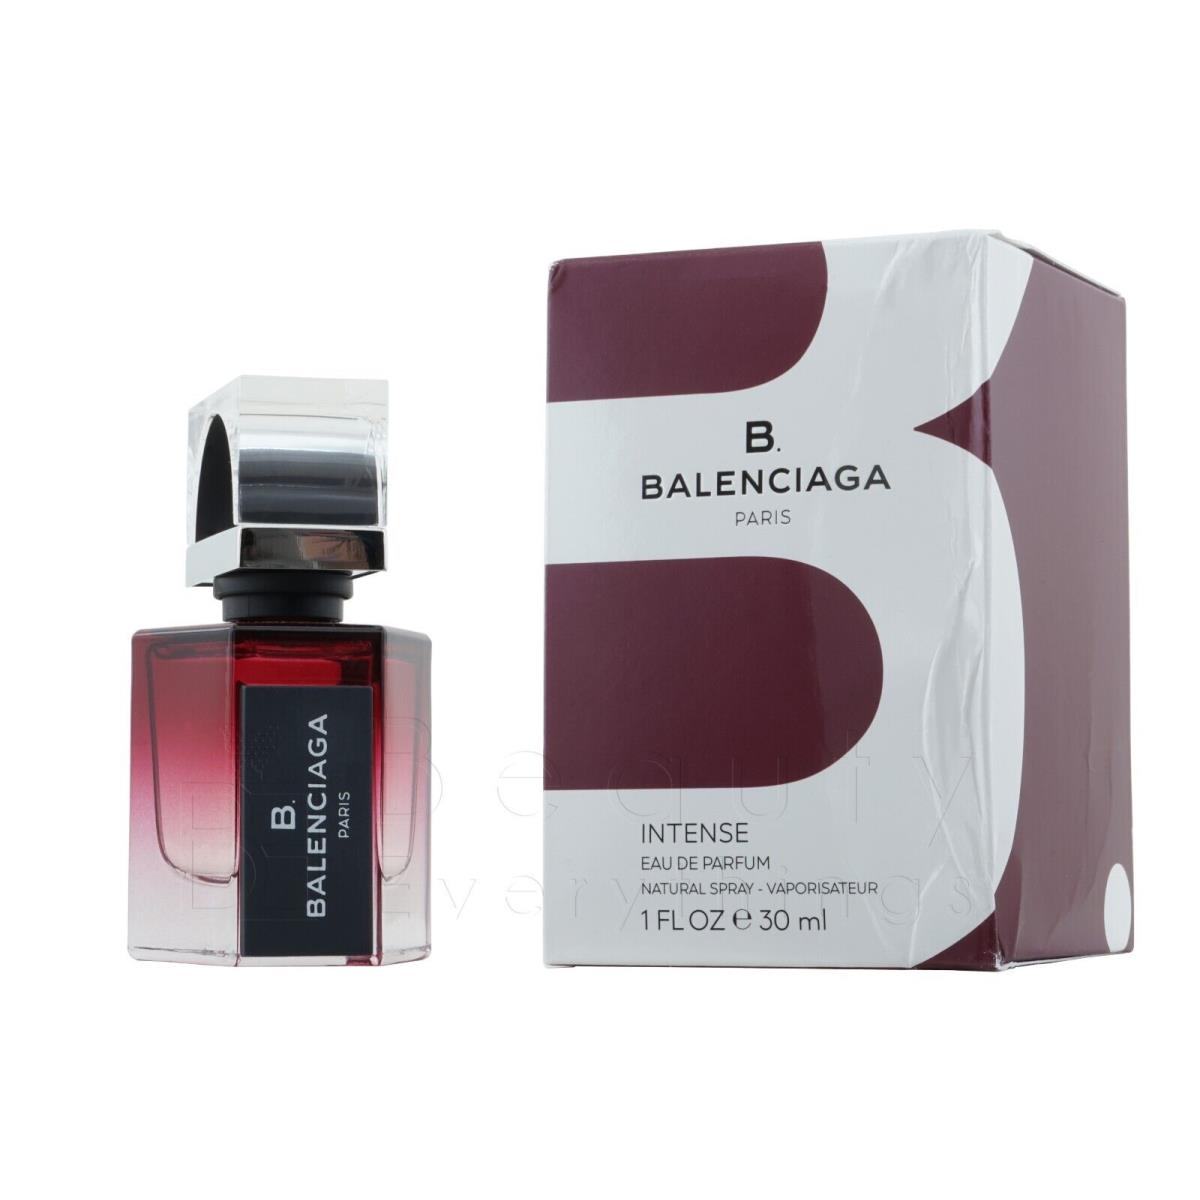 B Balenciaga Intense by Balenciaga 1.0oz / 30ml Edp Spray Dented Box For Women